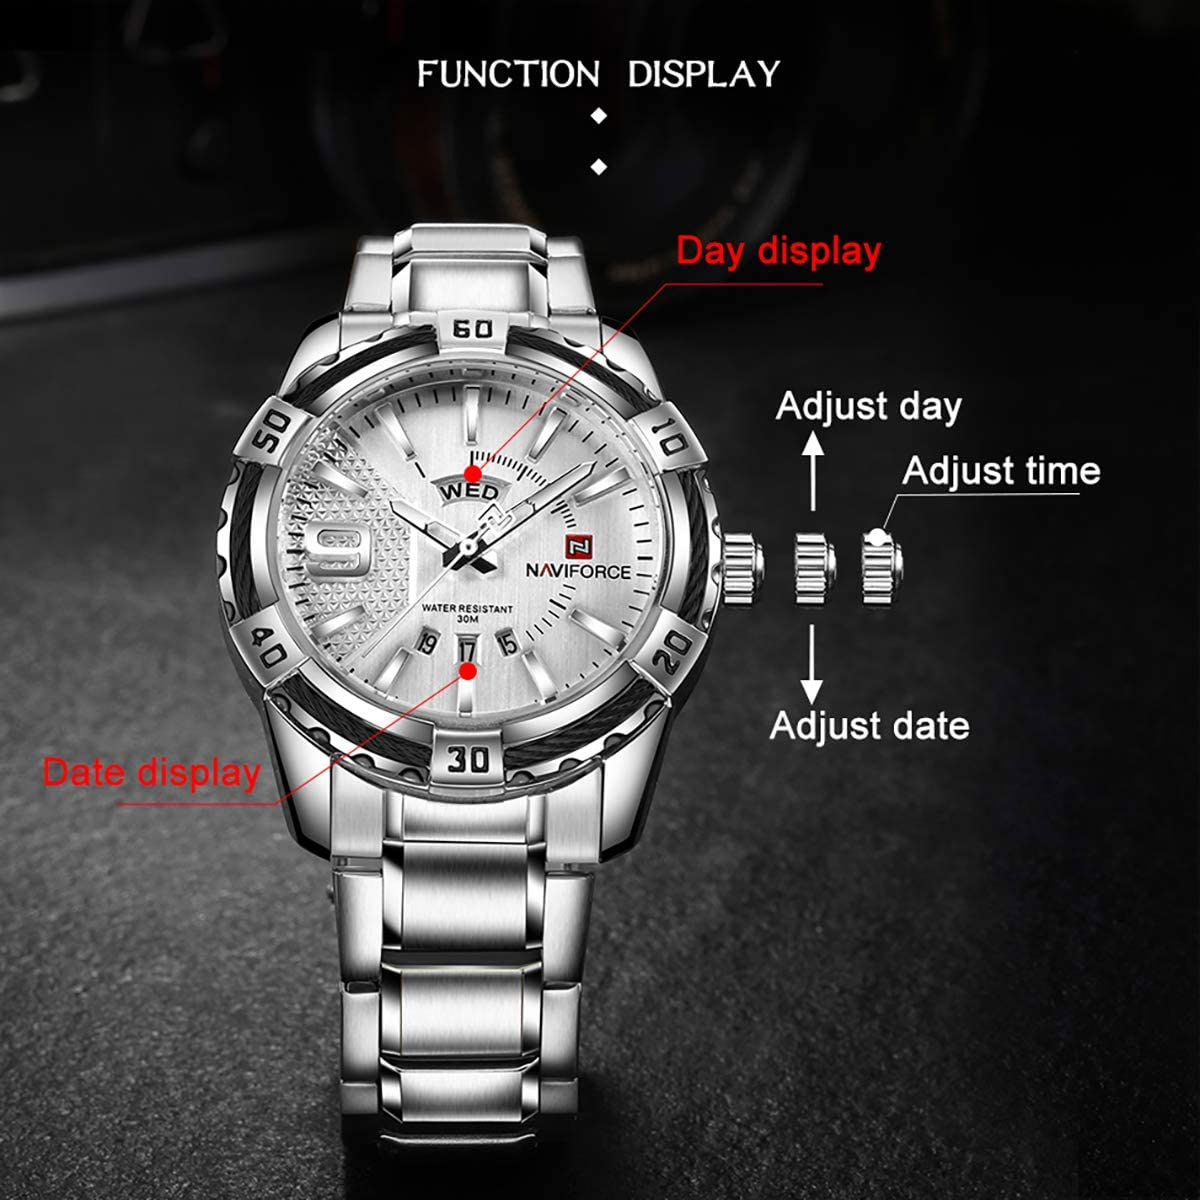 NaviForce-9117 men's luxury watch in silver chain specifications